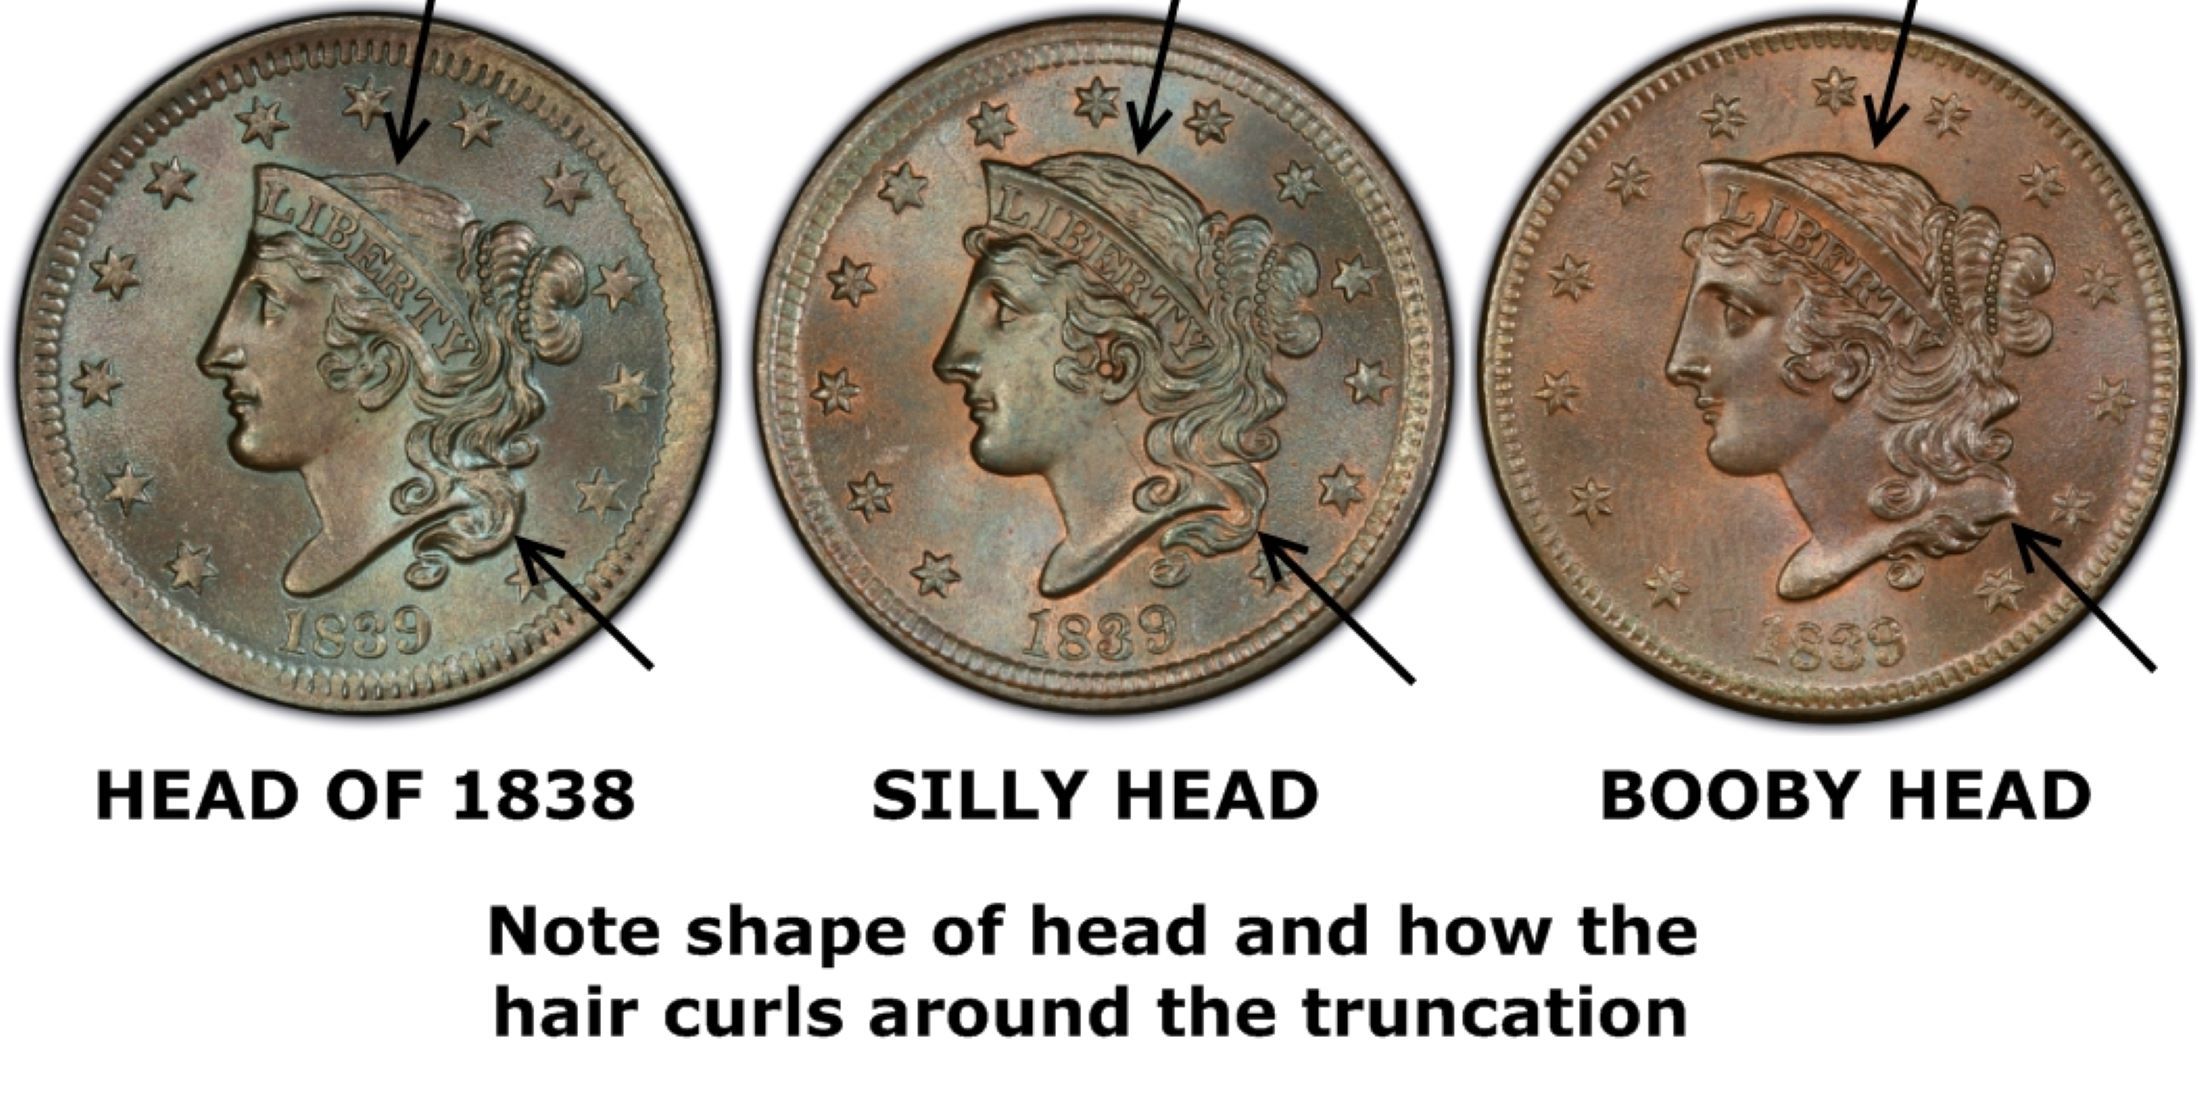 Silly head coin